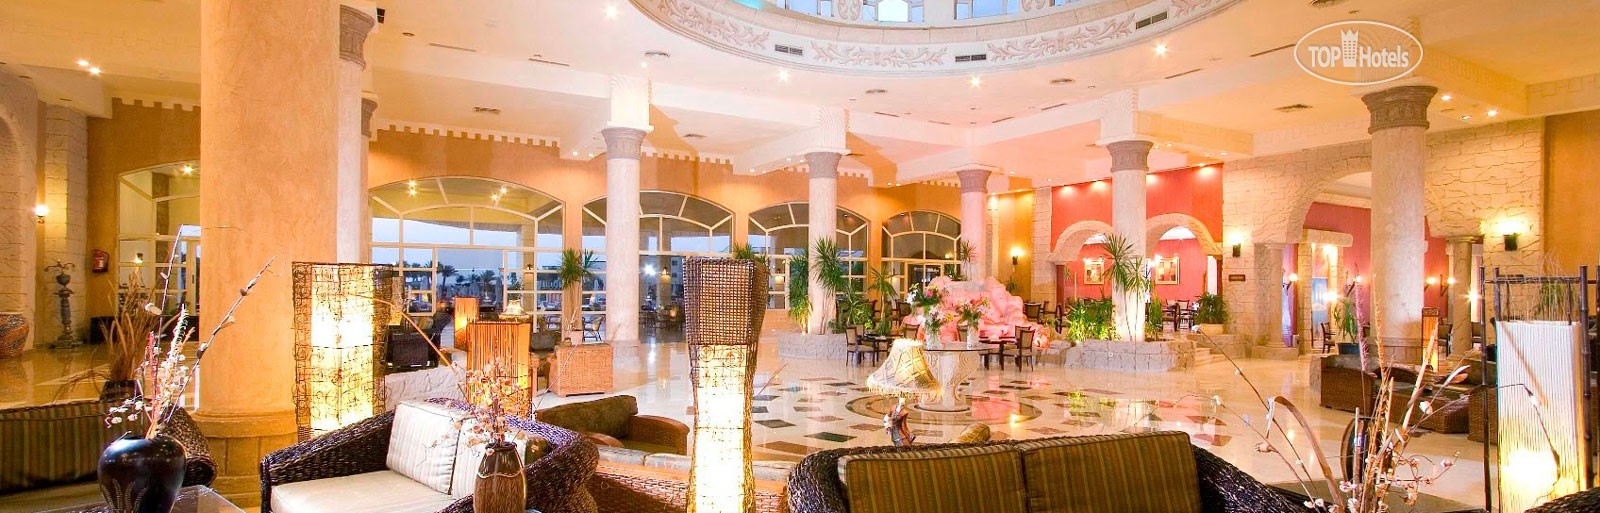 Royal Regency Club Sharm El Sheikh, Egypt, Sharm el-Sheikh, tours, photos and reviews